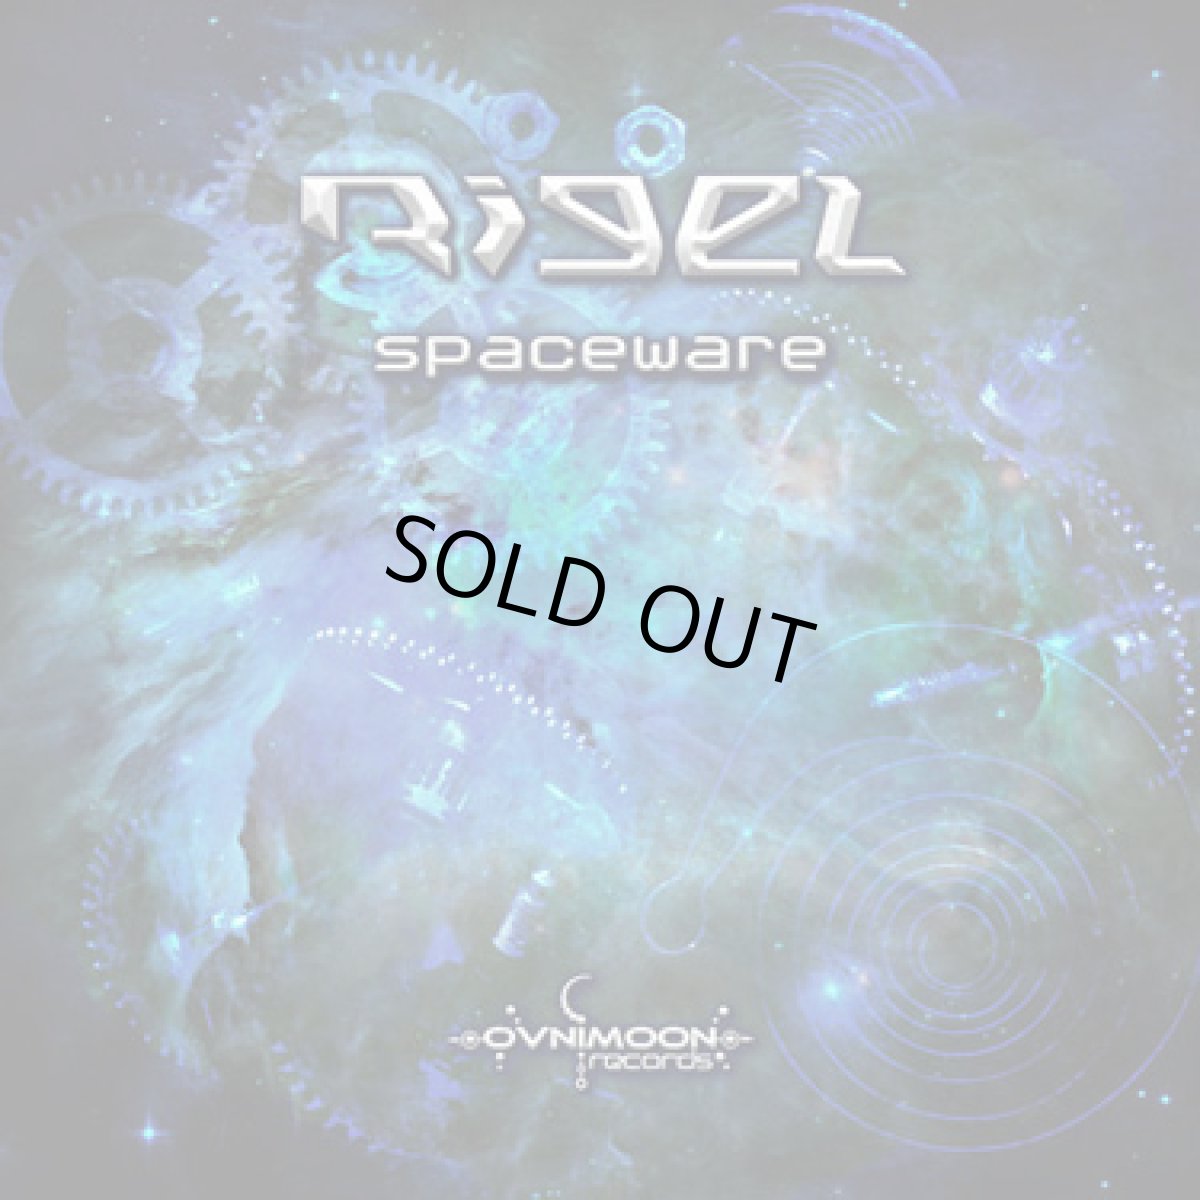 画像1: CD「Rigel / Spaceware」 (1)